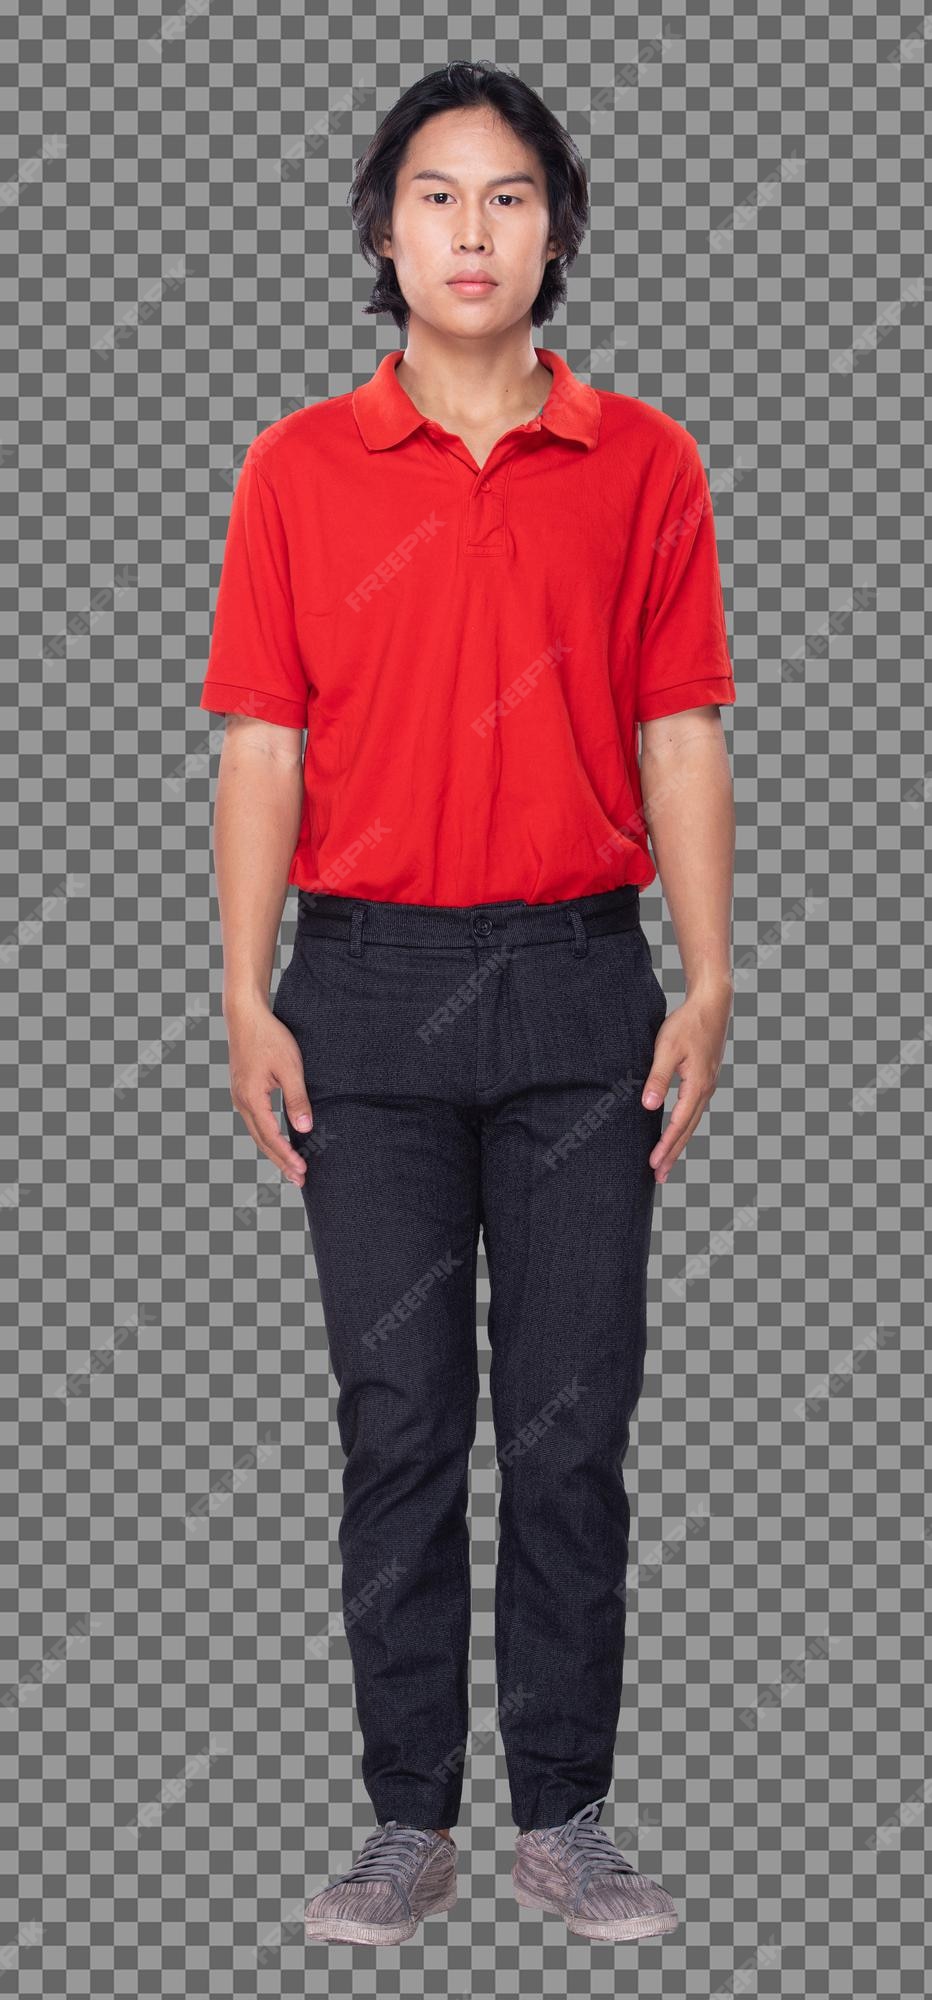 de collage completo figura snap de los años 20 hombre asiático cabello negro camisa roja pantalón negro y zapatos. guy está y gira 360 alrededor de la vista trasera lateral